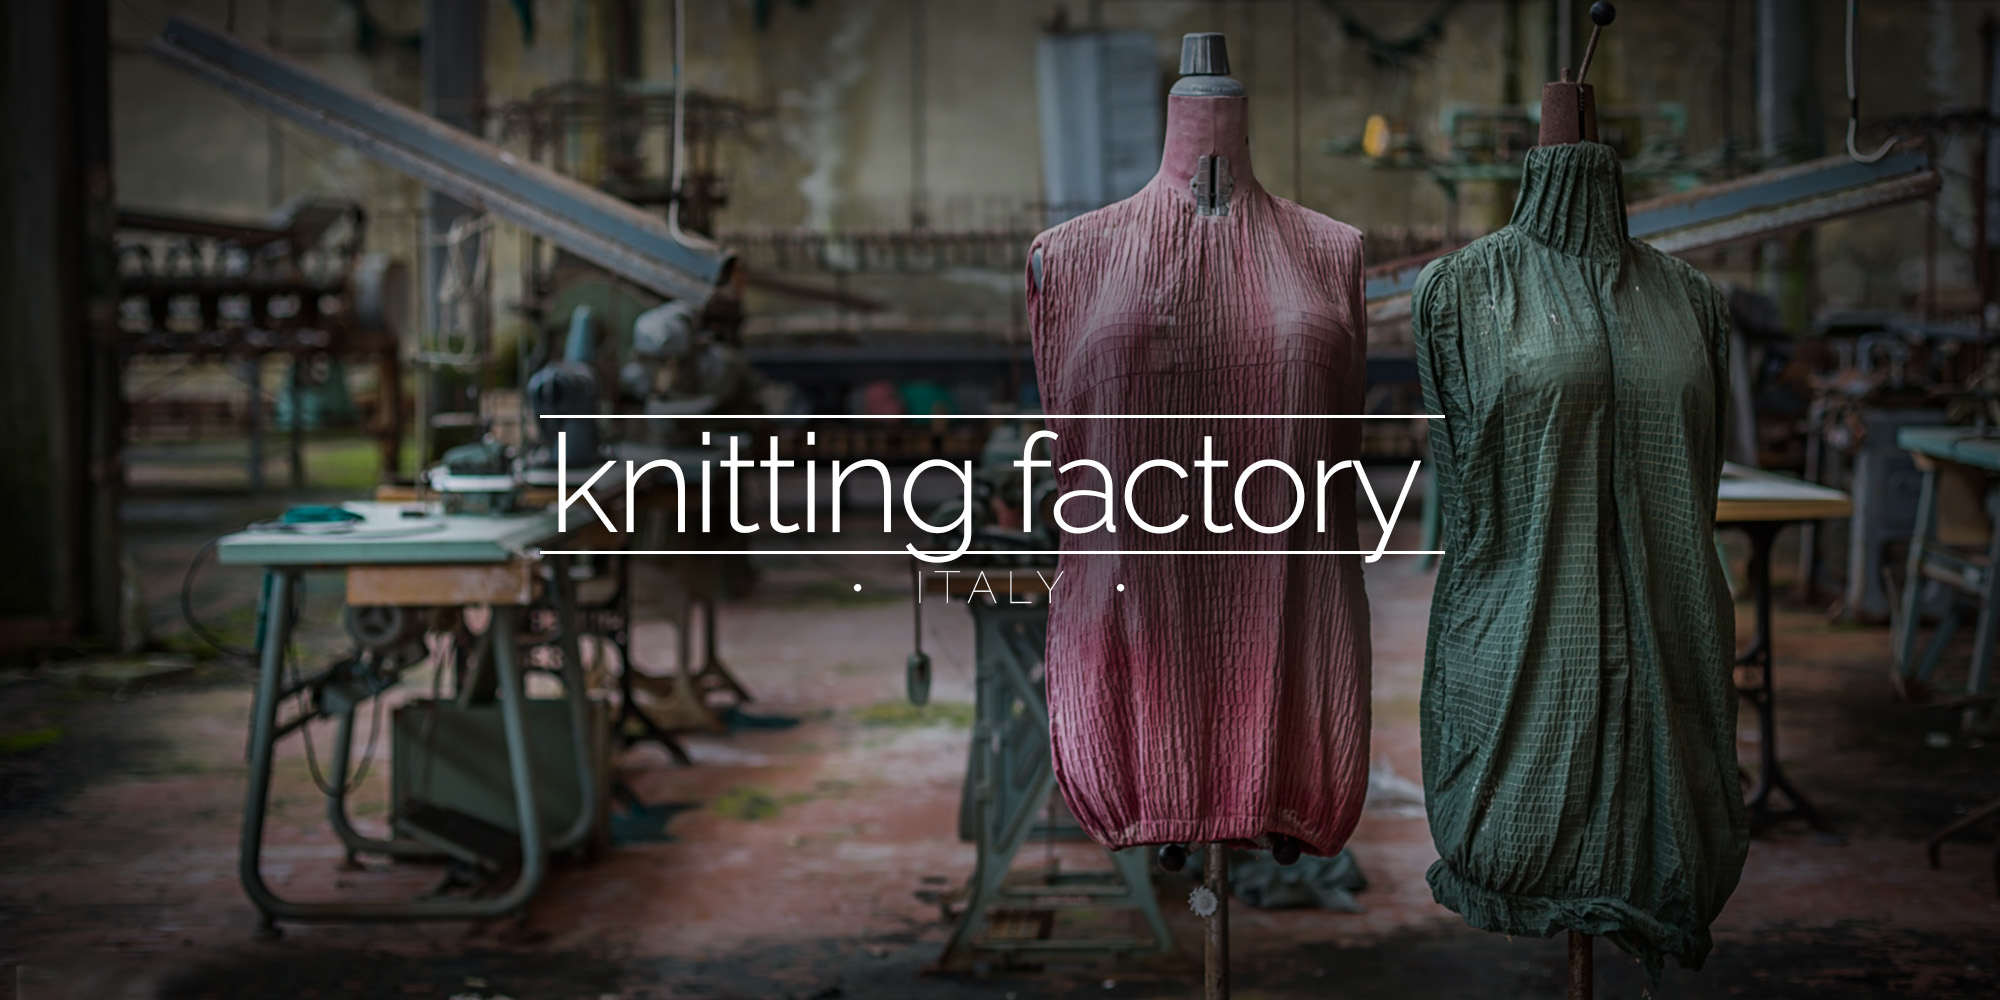 Knitting Factory, Italy